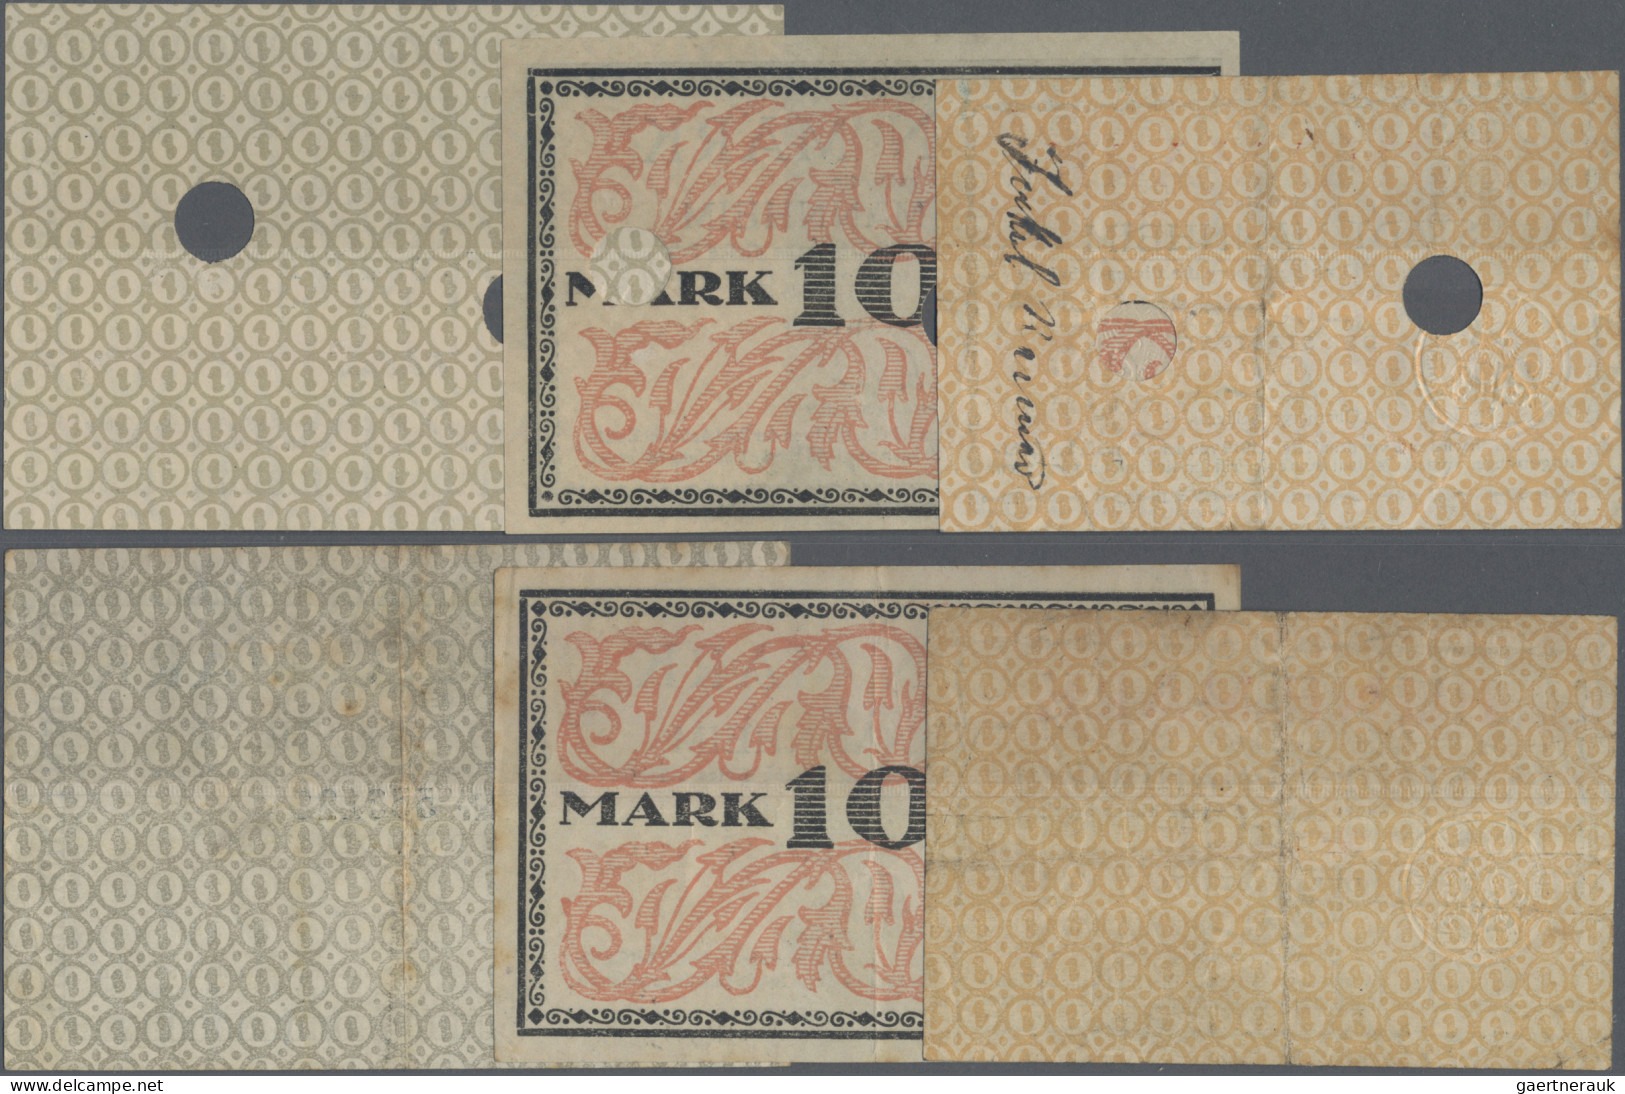 Deutschland - Notgeld - Baden: Mannheim, Stadt, 5, 10, 20 Mark, O. D. - Nach 1.2 - [11] Local Banknote Issues